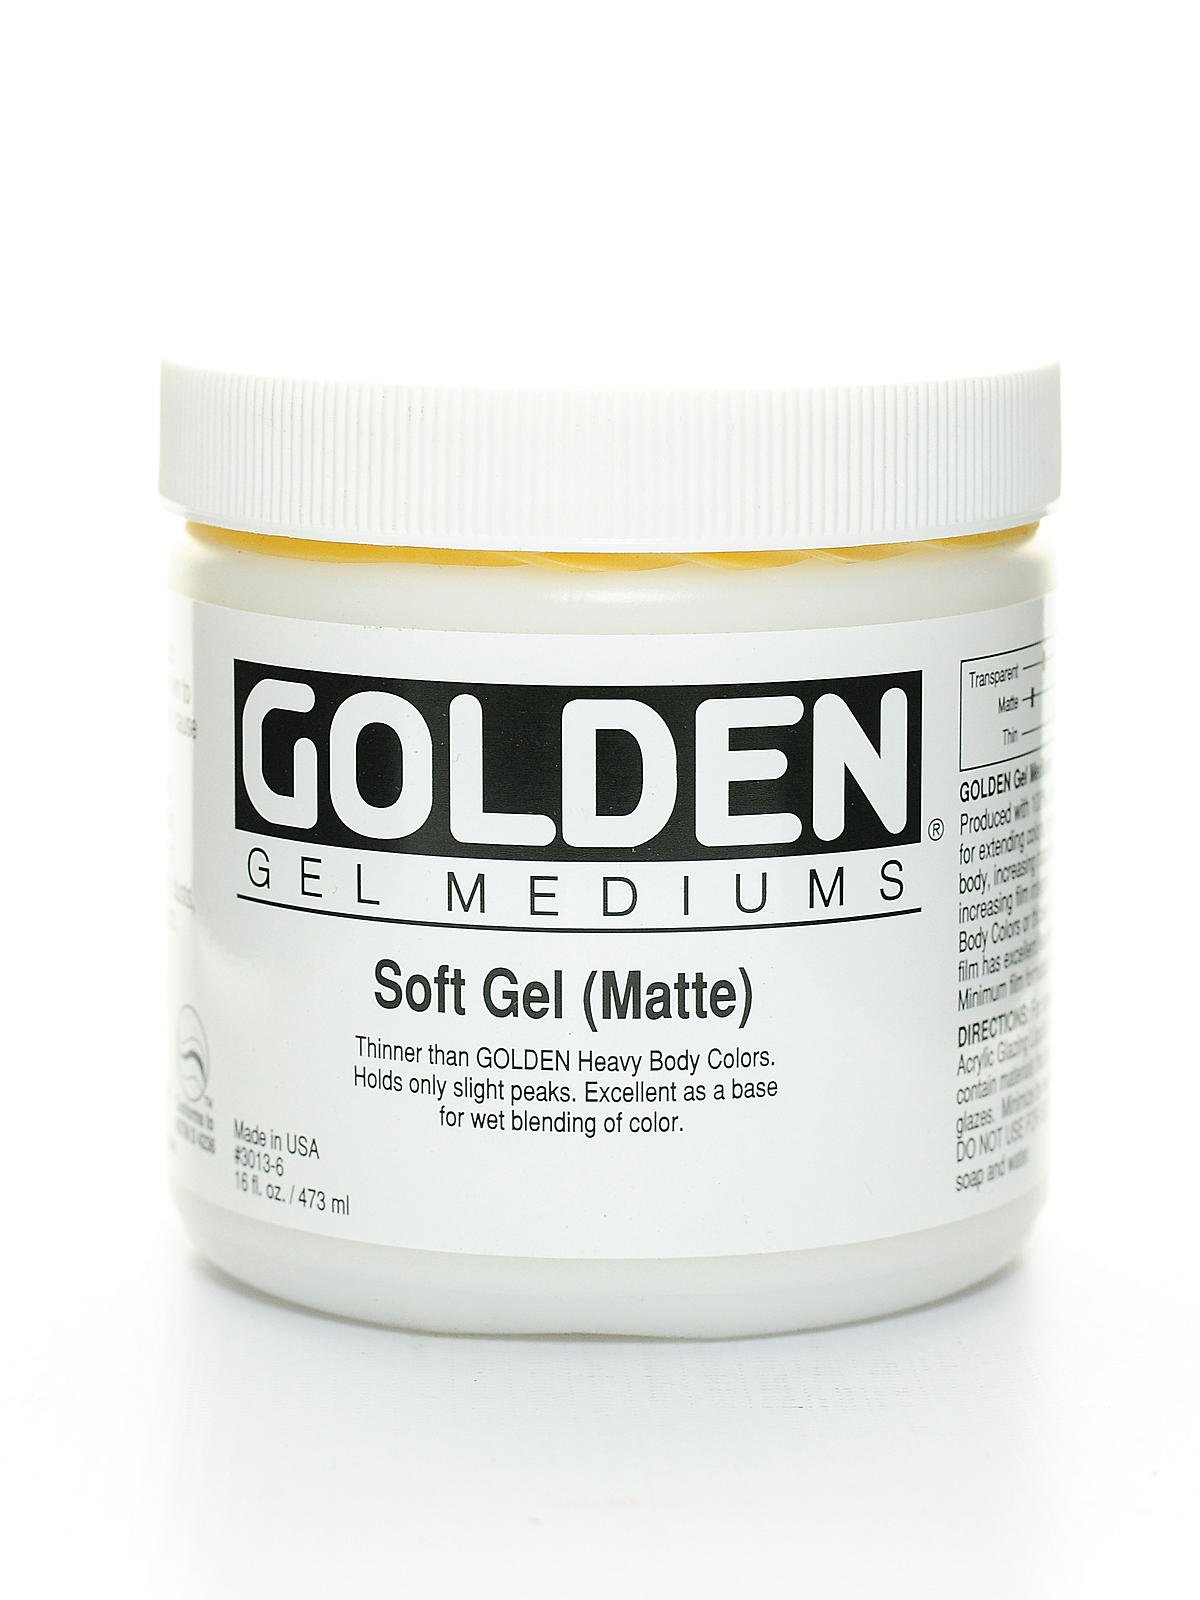 Golden Soft Gel Medium 8oz